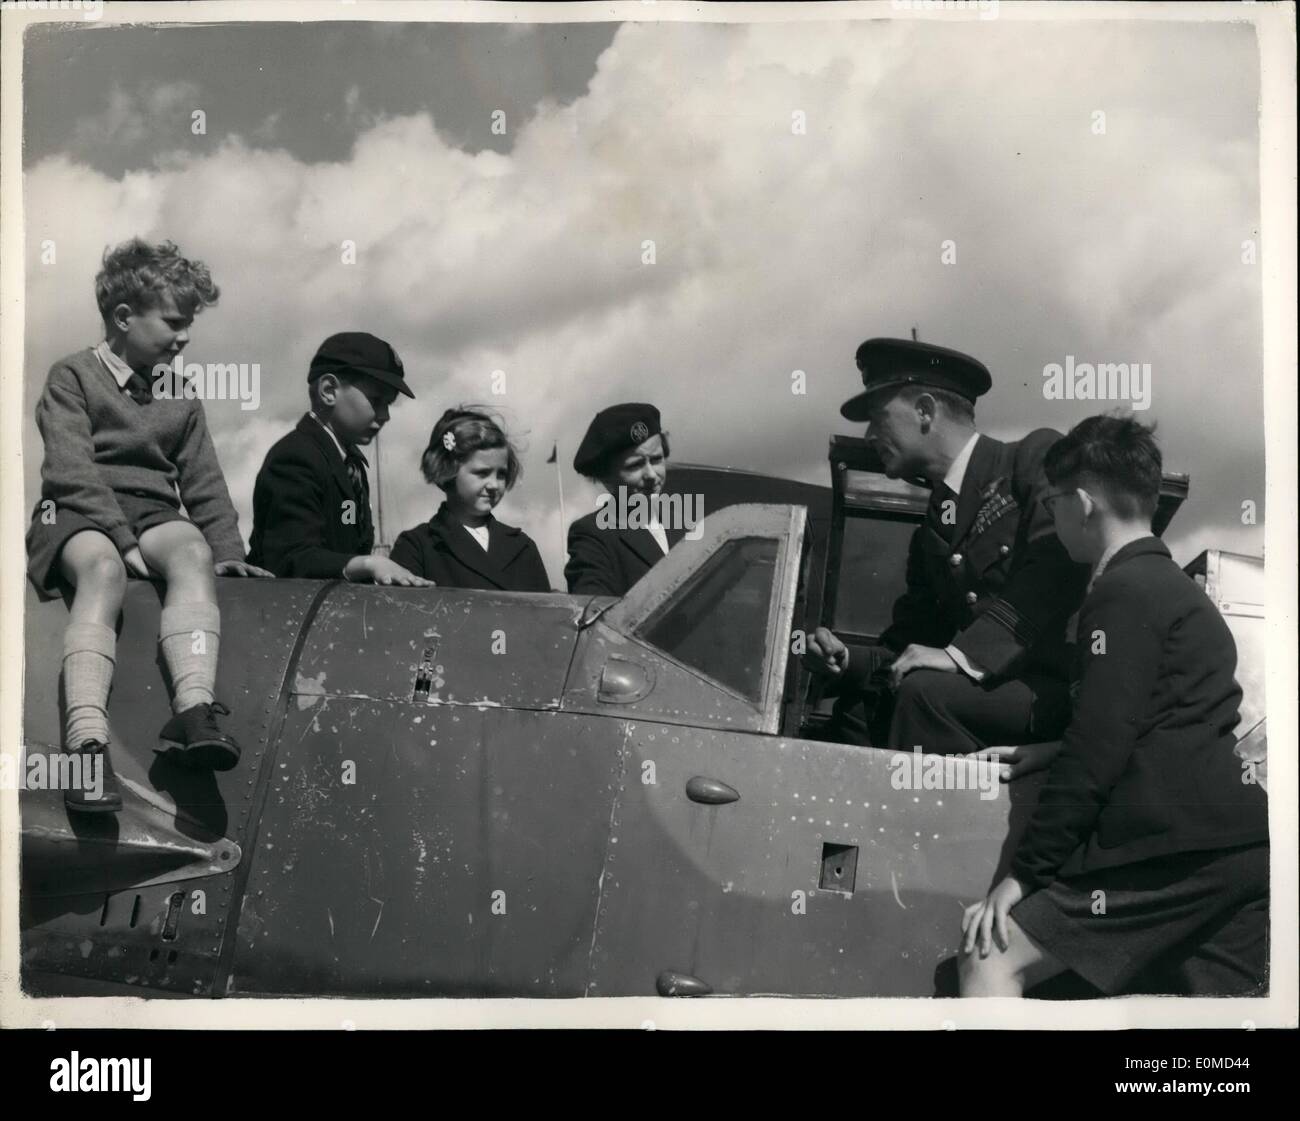 Sept. 09, 1954 -''4.09''-Flugzeuge. M.E. 109 Kingaby auf Horse Guards Parade: eine Anzeige der britischen und deutschen Flugzeuge, die an der Schlacht von Großbritannien nahm wird auf Horse Guards Parade statt, um den Jahrestag der Schlacht zu markieren. Foto zeigt eine Schlacht von Großbritannien 'ACE' Sqd. Leader Don Kingaby D.S.O., A.F.C., D.F.M. und zwei Bars, die kommt aus Beckenham Kent im Cockpit eines Mo 109 sitzt.  zu den Knaben auf der Horse Guards Parade im Chat heute Morgen. Sqd. Leader Kingaby abgeschossen 22 Flugzeuge (18 M.E.) während des Krieges und war dann ein F/Sgt Stockfoto